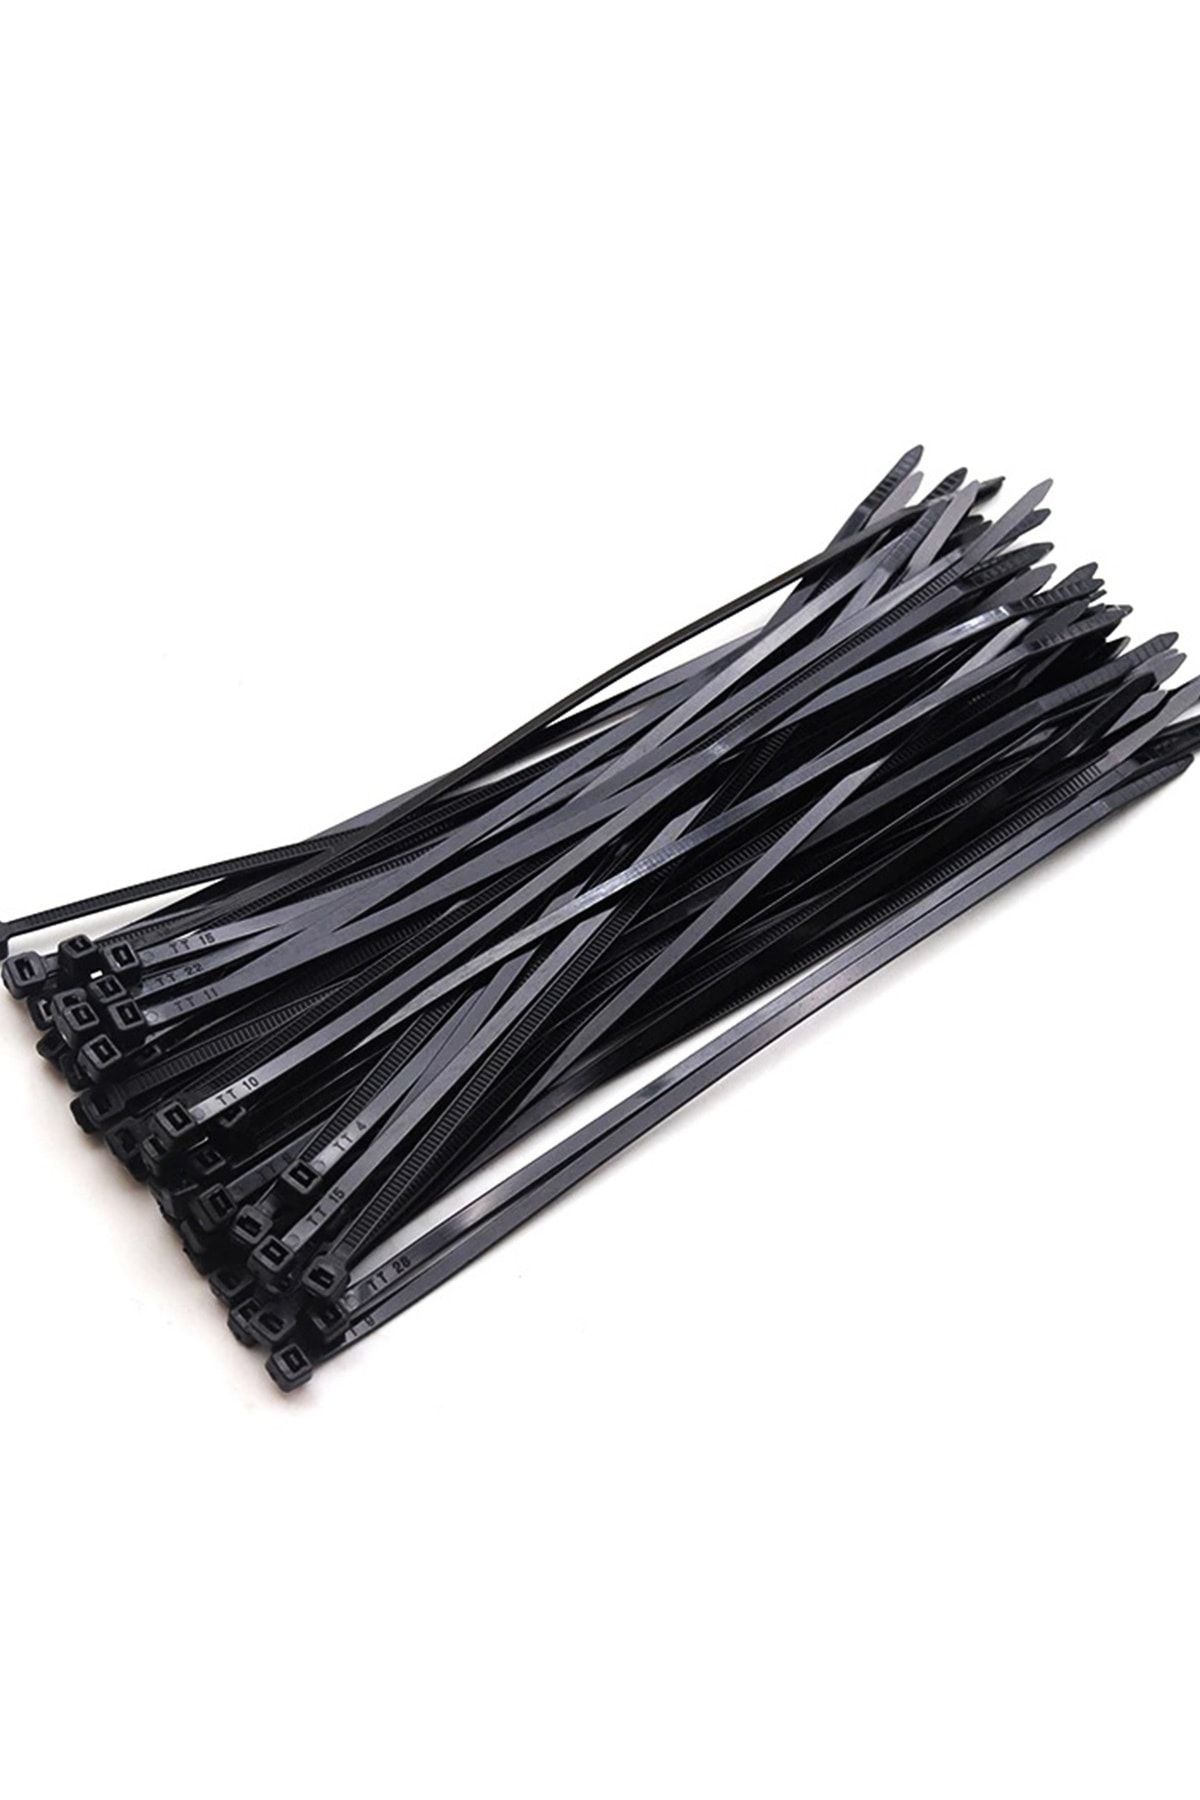 Xolo 100 Adet Siyah Plastik Kelepçe Cırt Kablo 2.5 10cm Uzunluk